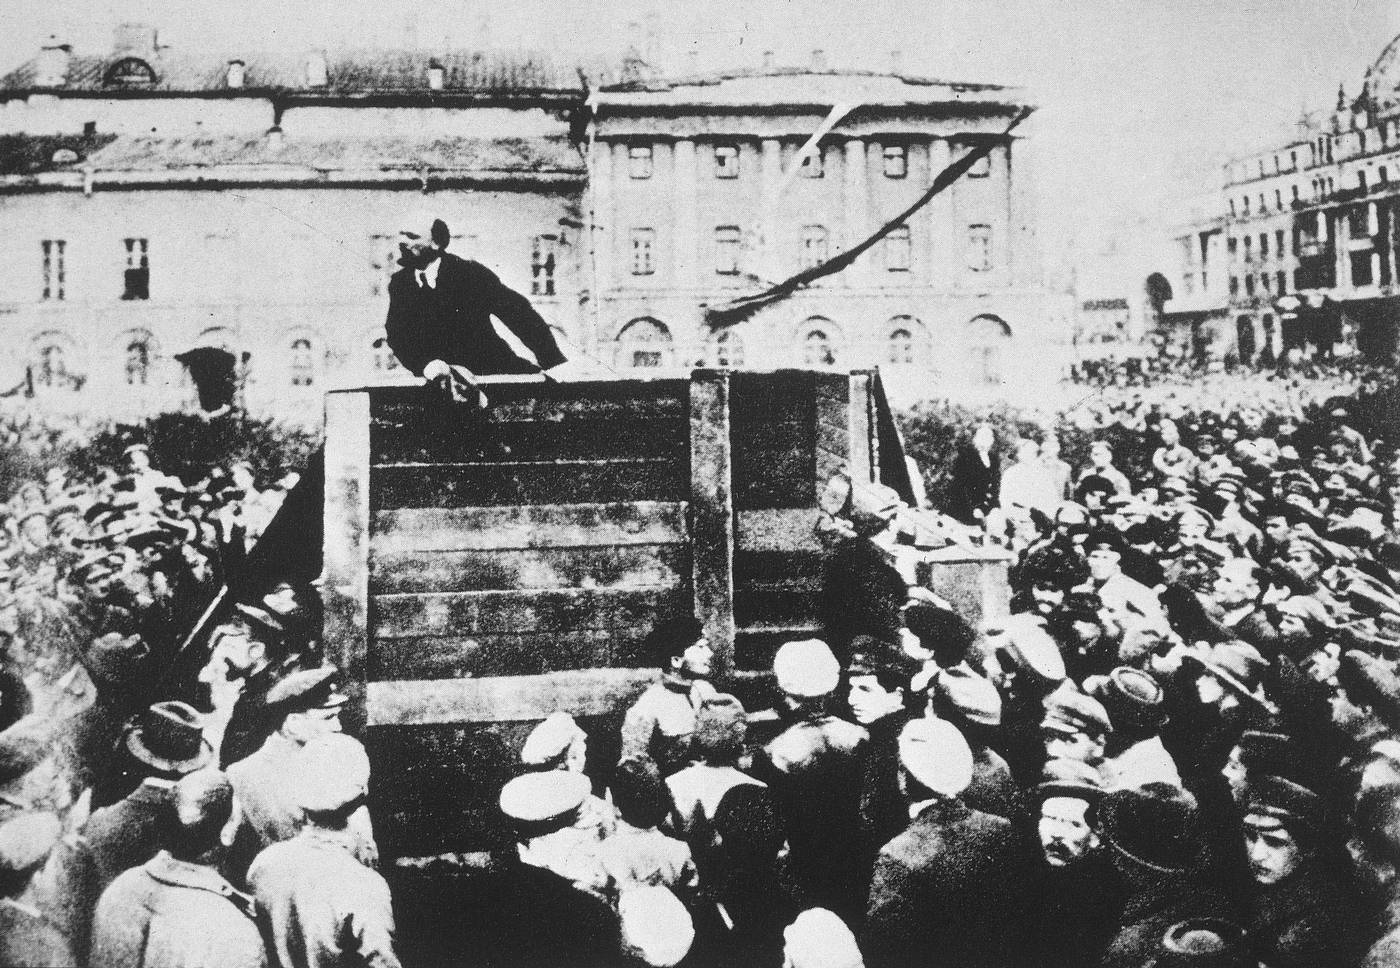 Lénine s'adressant à des soldats, photographie retouchée.